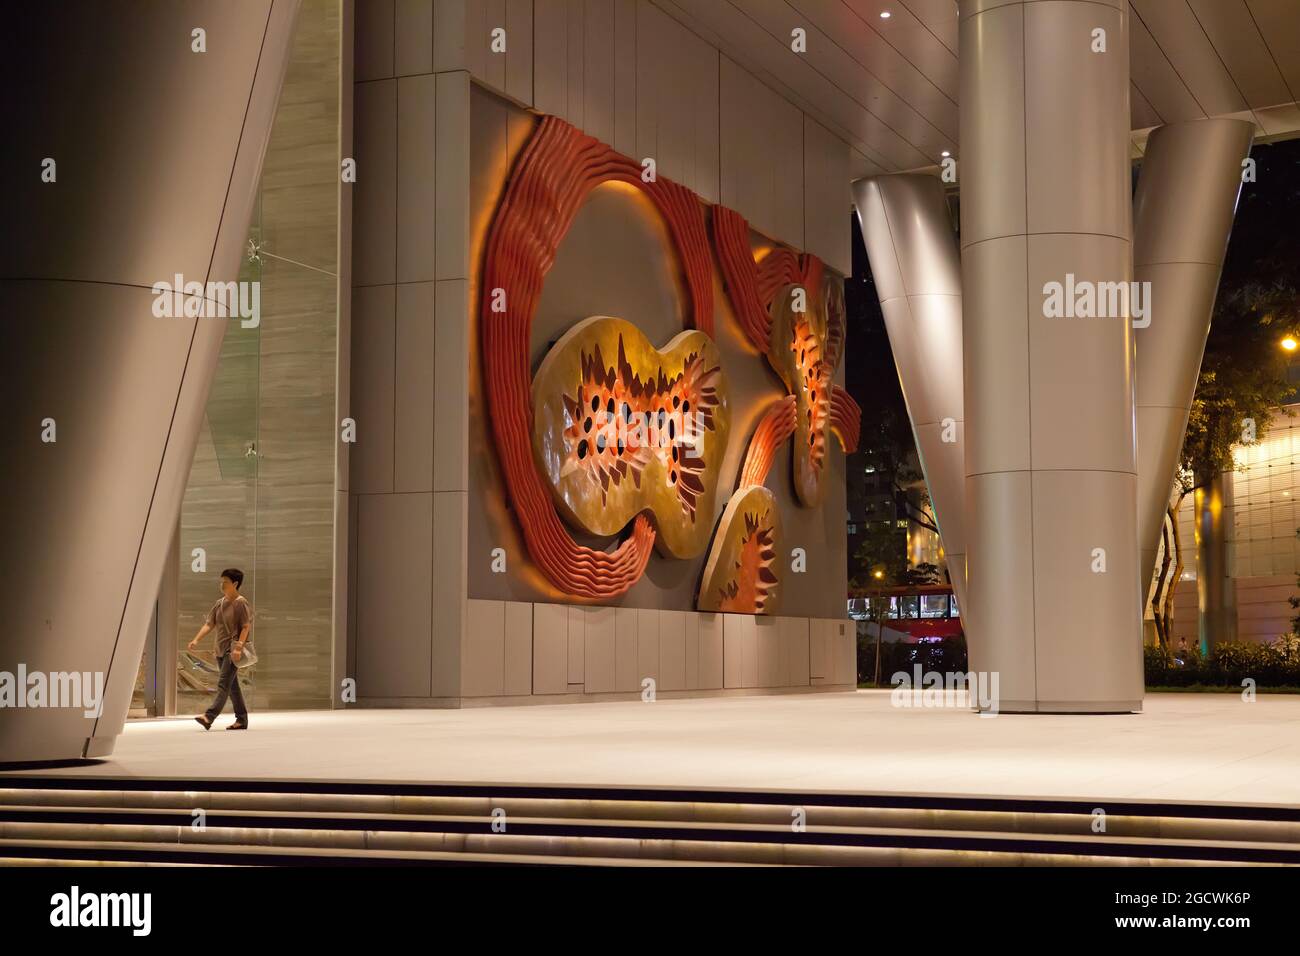 Une figure solitaire passe devant une œuvre d'art publique à Singapour Banque D'Images